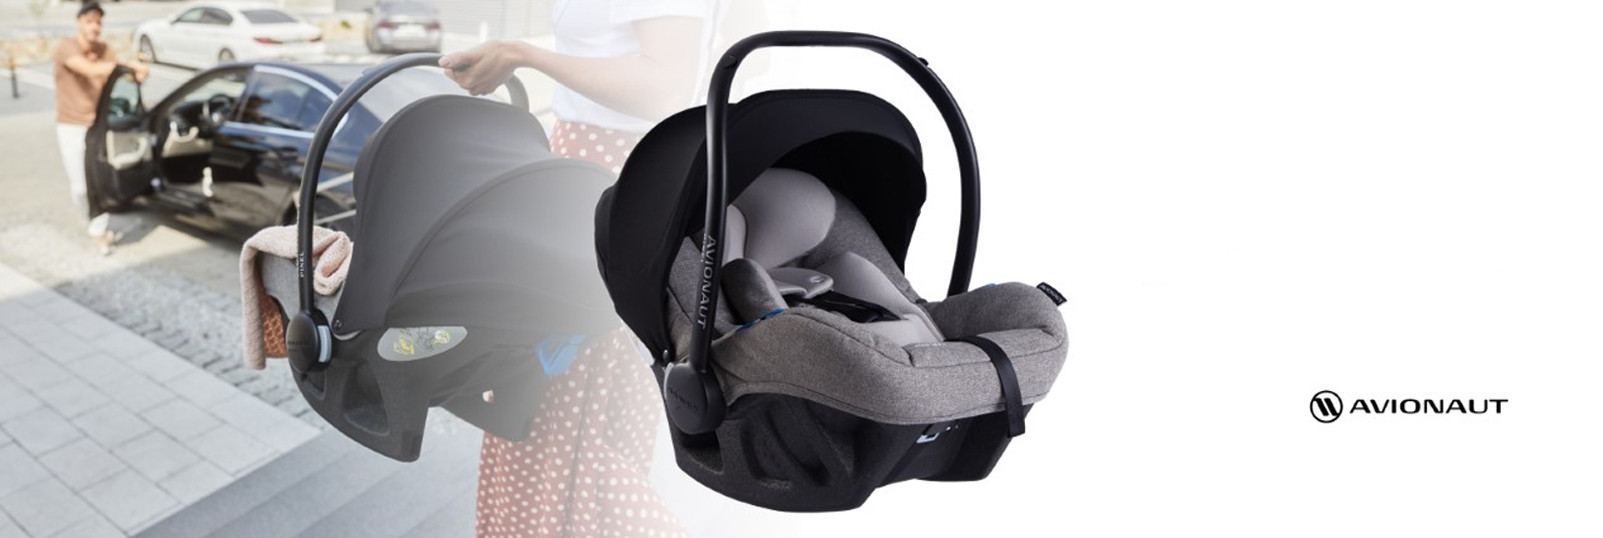 Sillas de coche para bebés y niños - Babylor - Babylor - Ets Marolleau